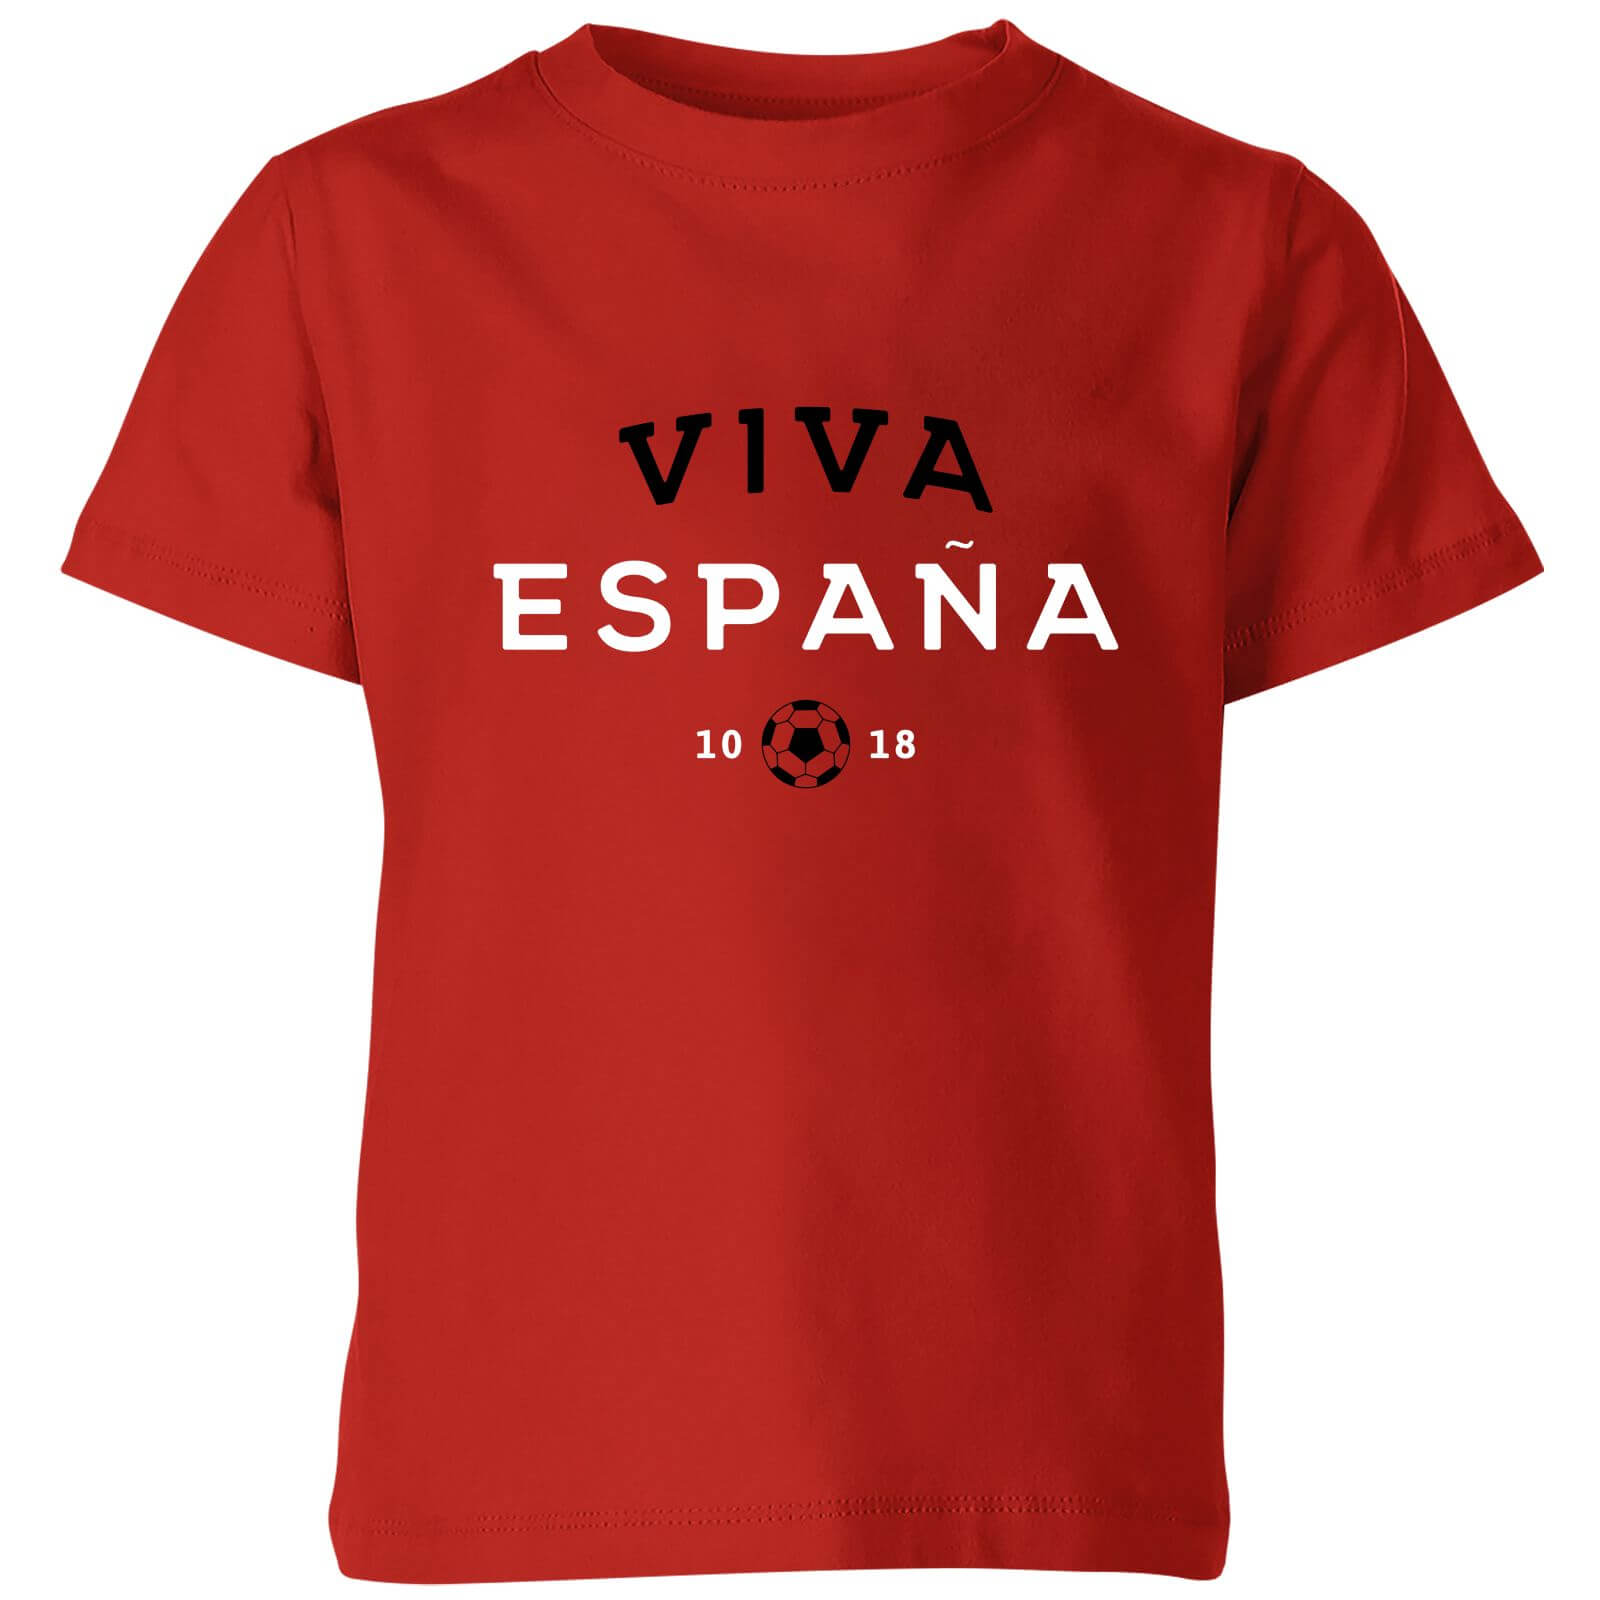 Viva Espana Kids' T-Shirt - Red - 3-4 Years - Red